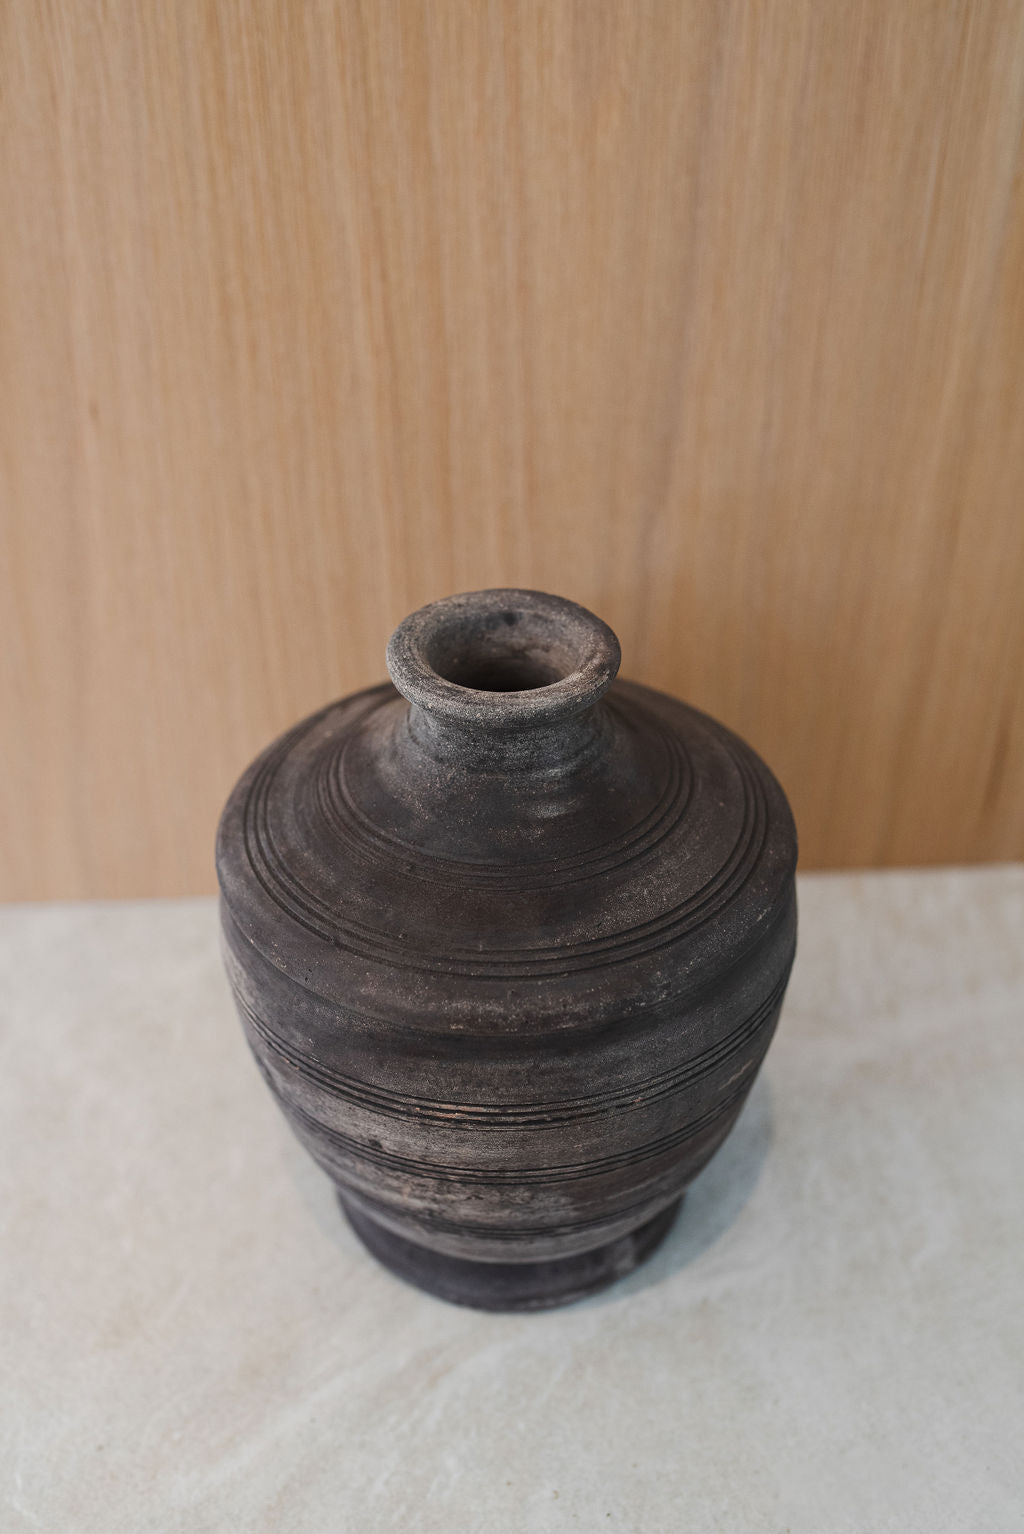 Indian Clay Pot